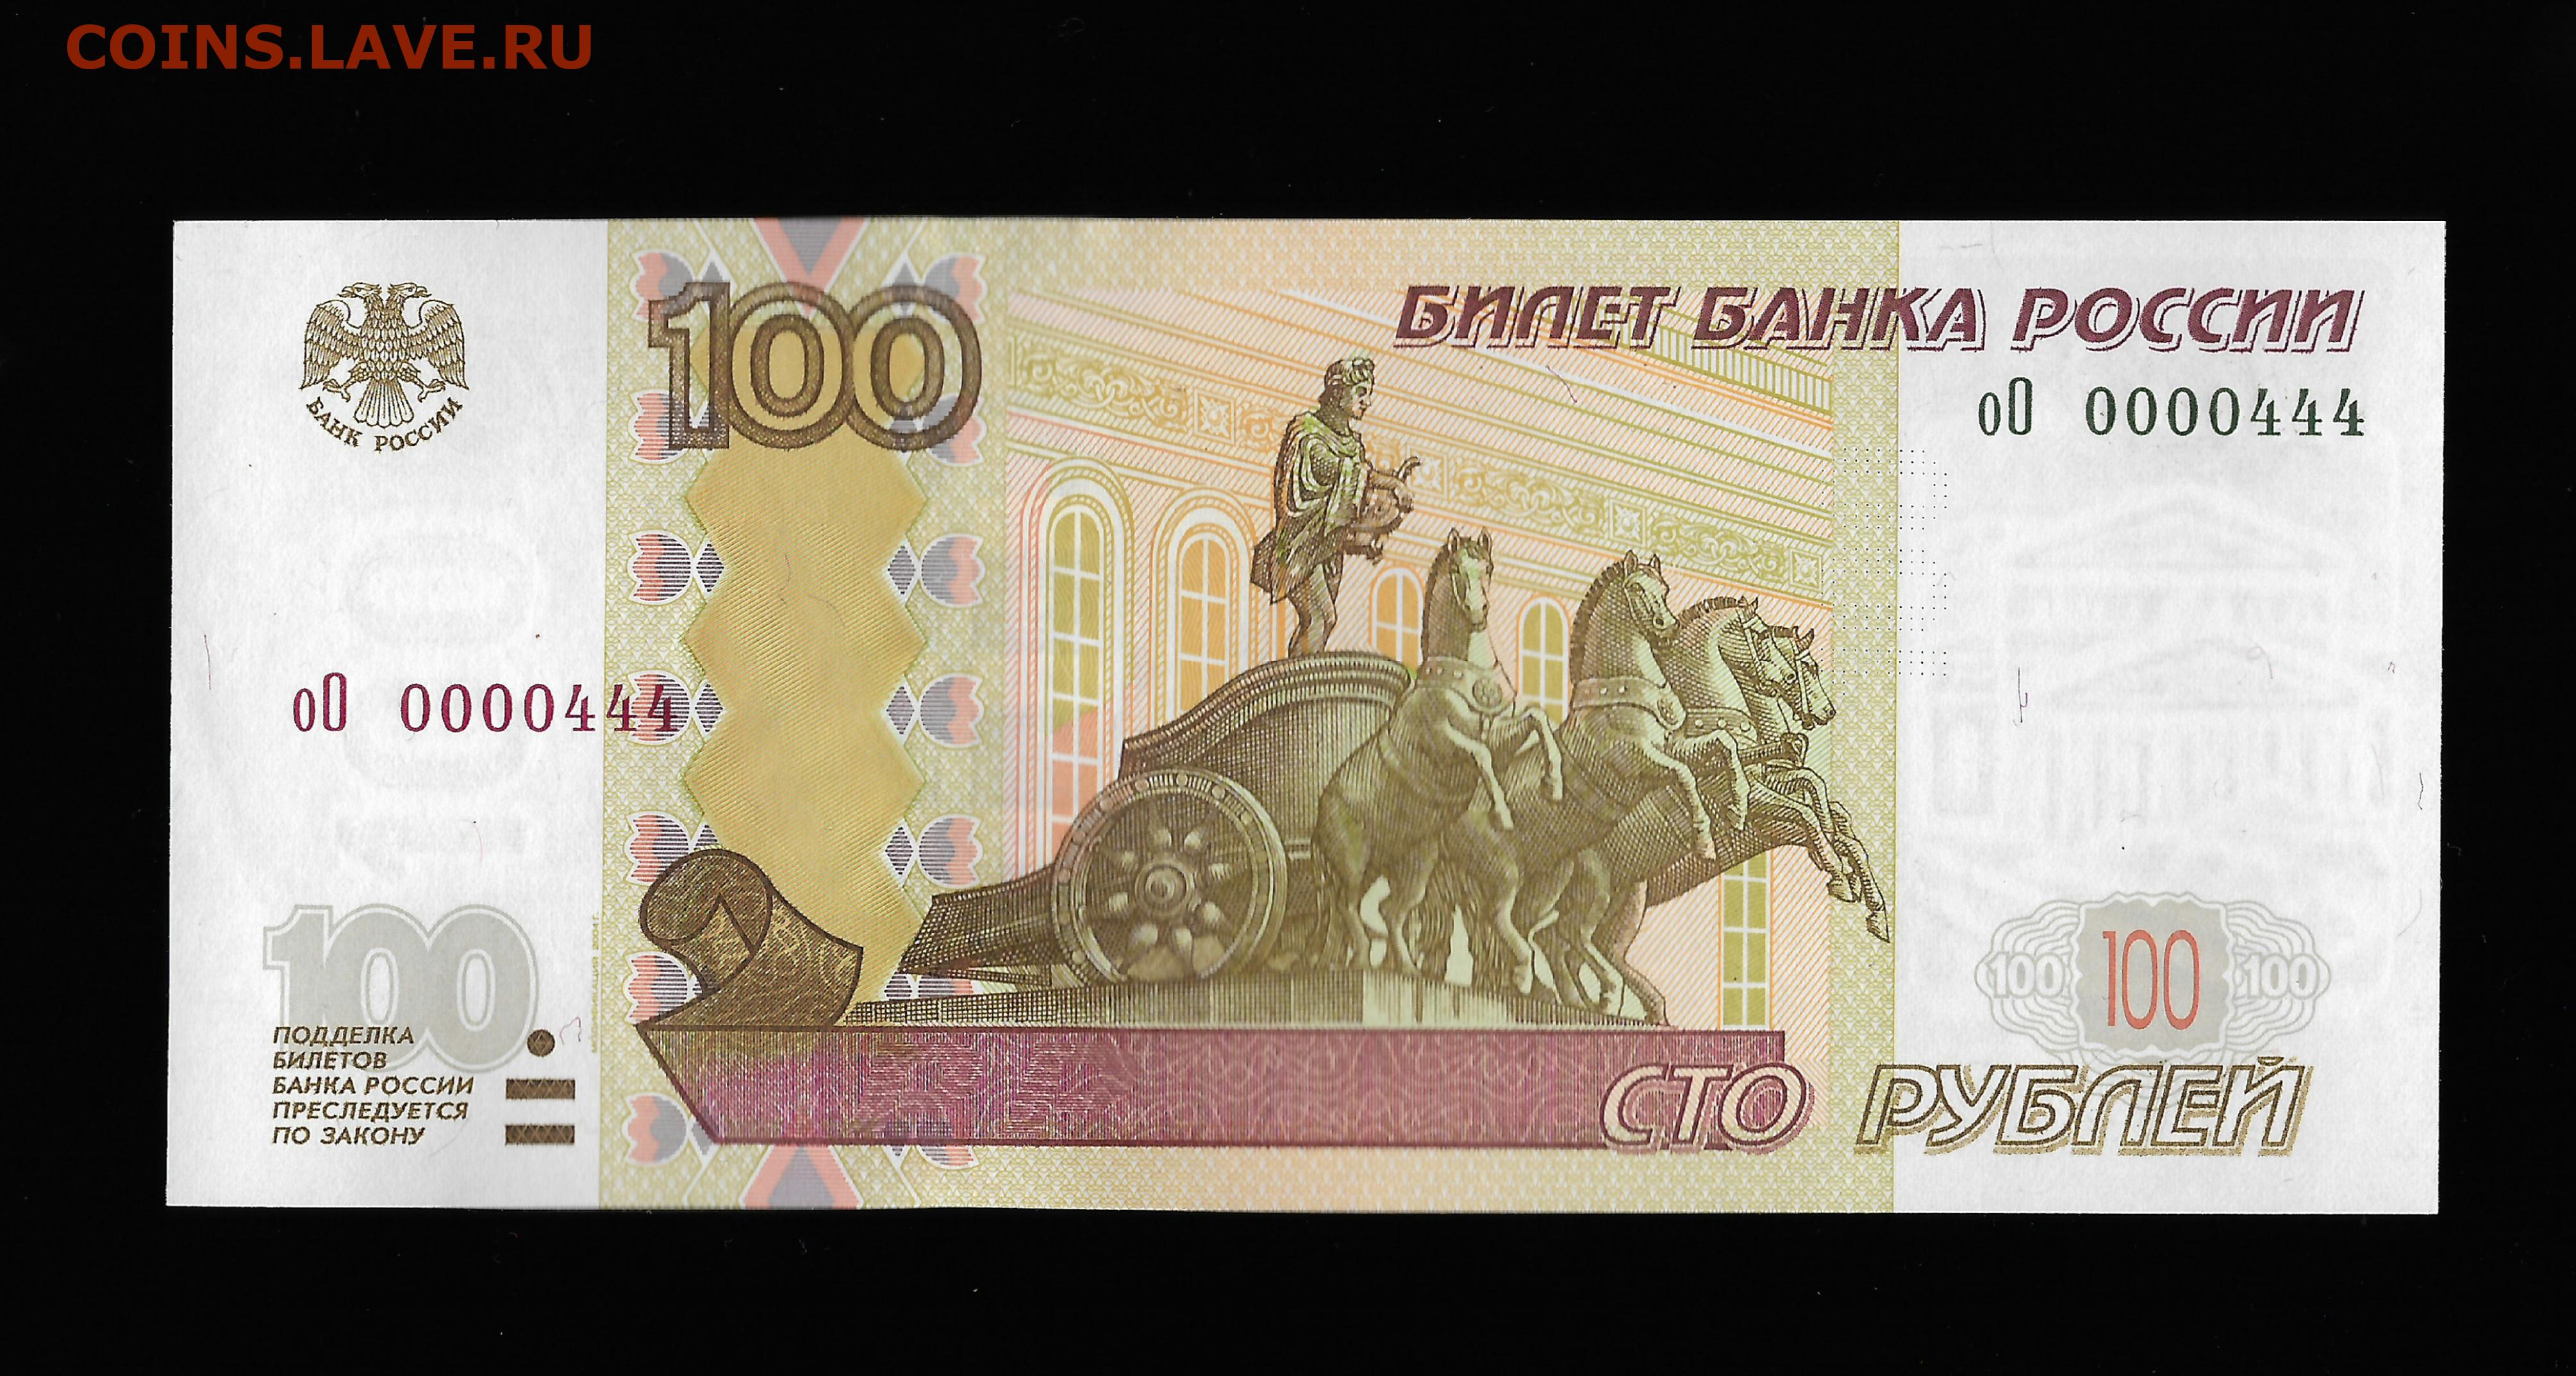 18 300 в рублях. Купюра 100 рублей 1997. Купюра 4 рубля. 4 Тысячи рублей банкнота. Купюры с интересным дизайном.